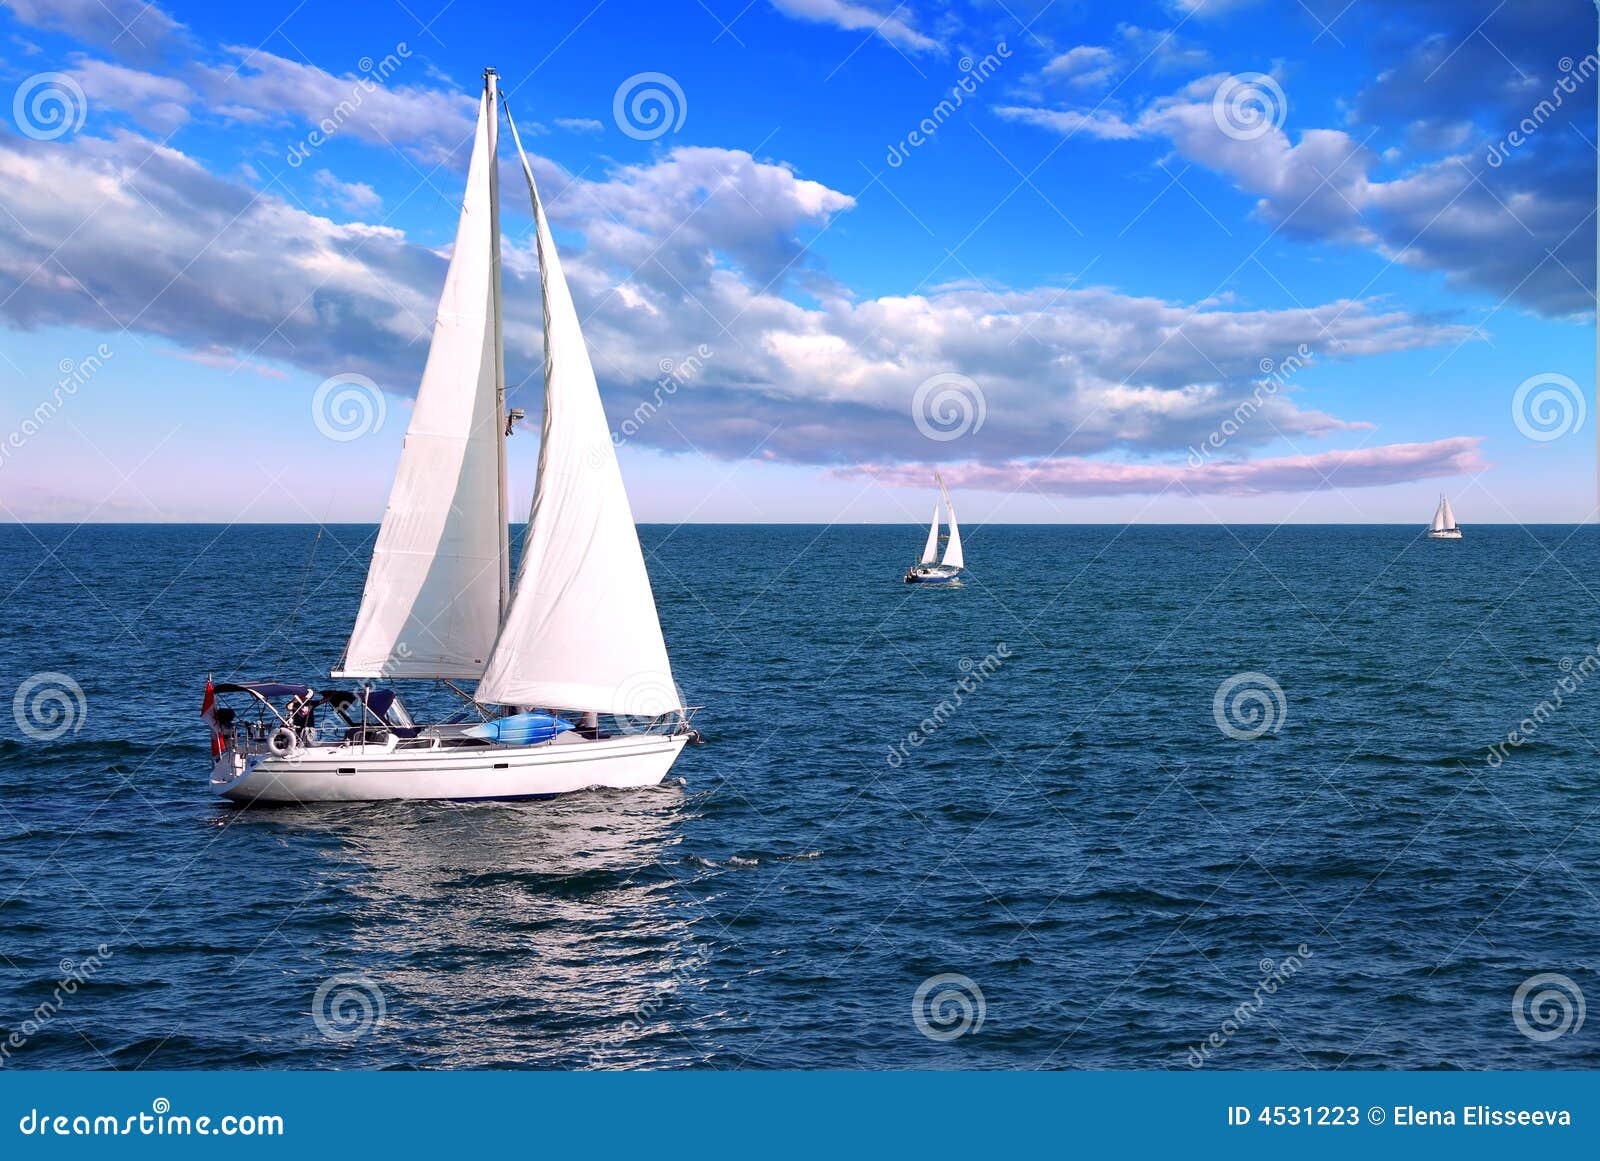 Barche A Vela In Mare Immagine Stock Immagine Di Colorful